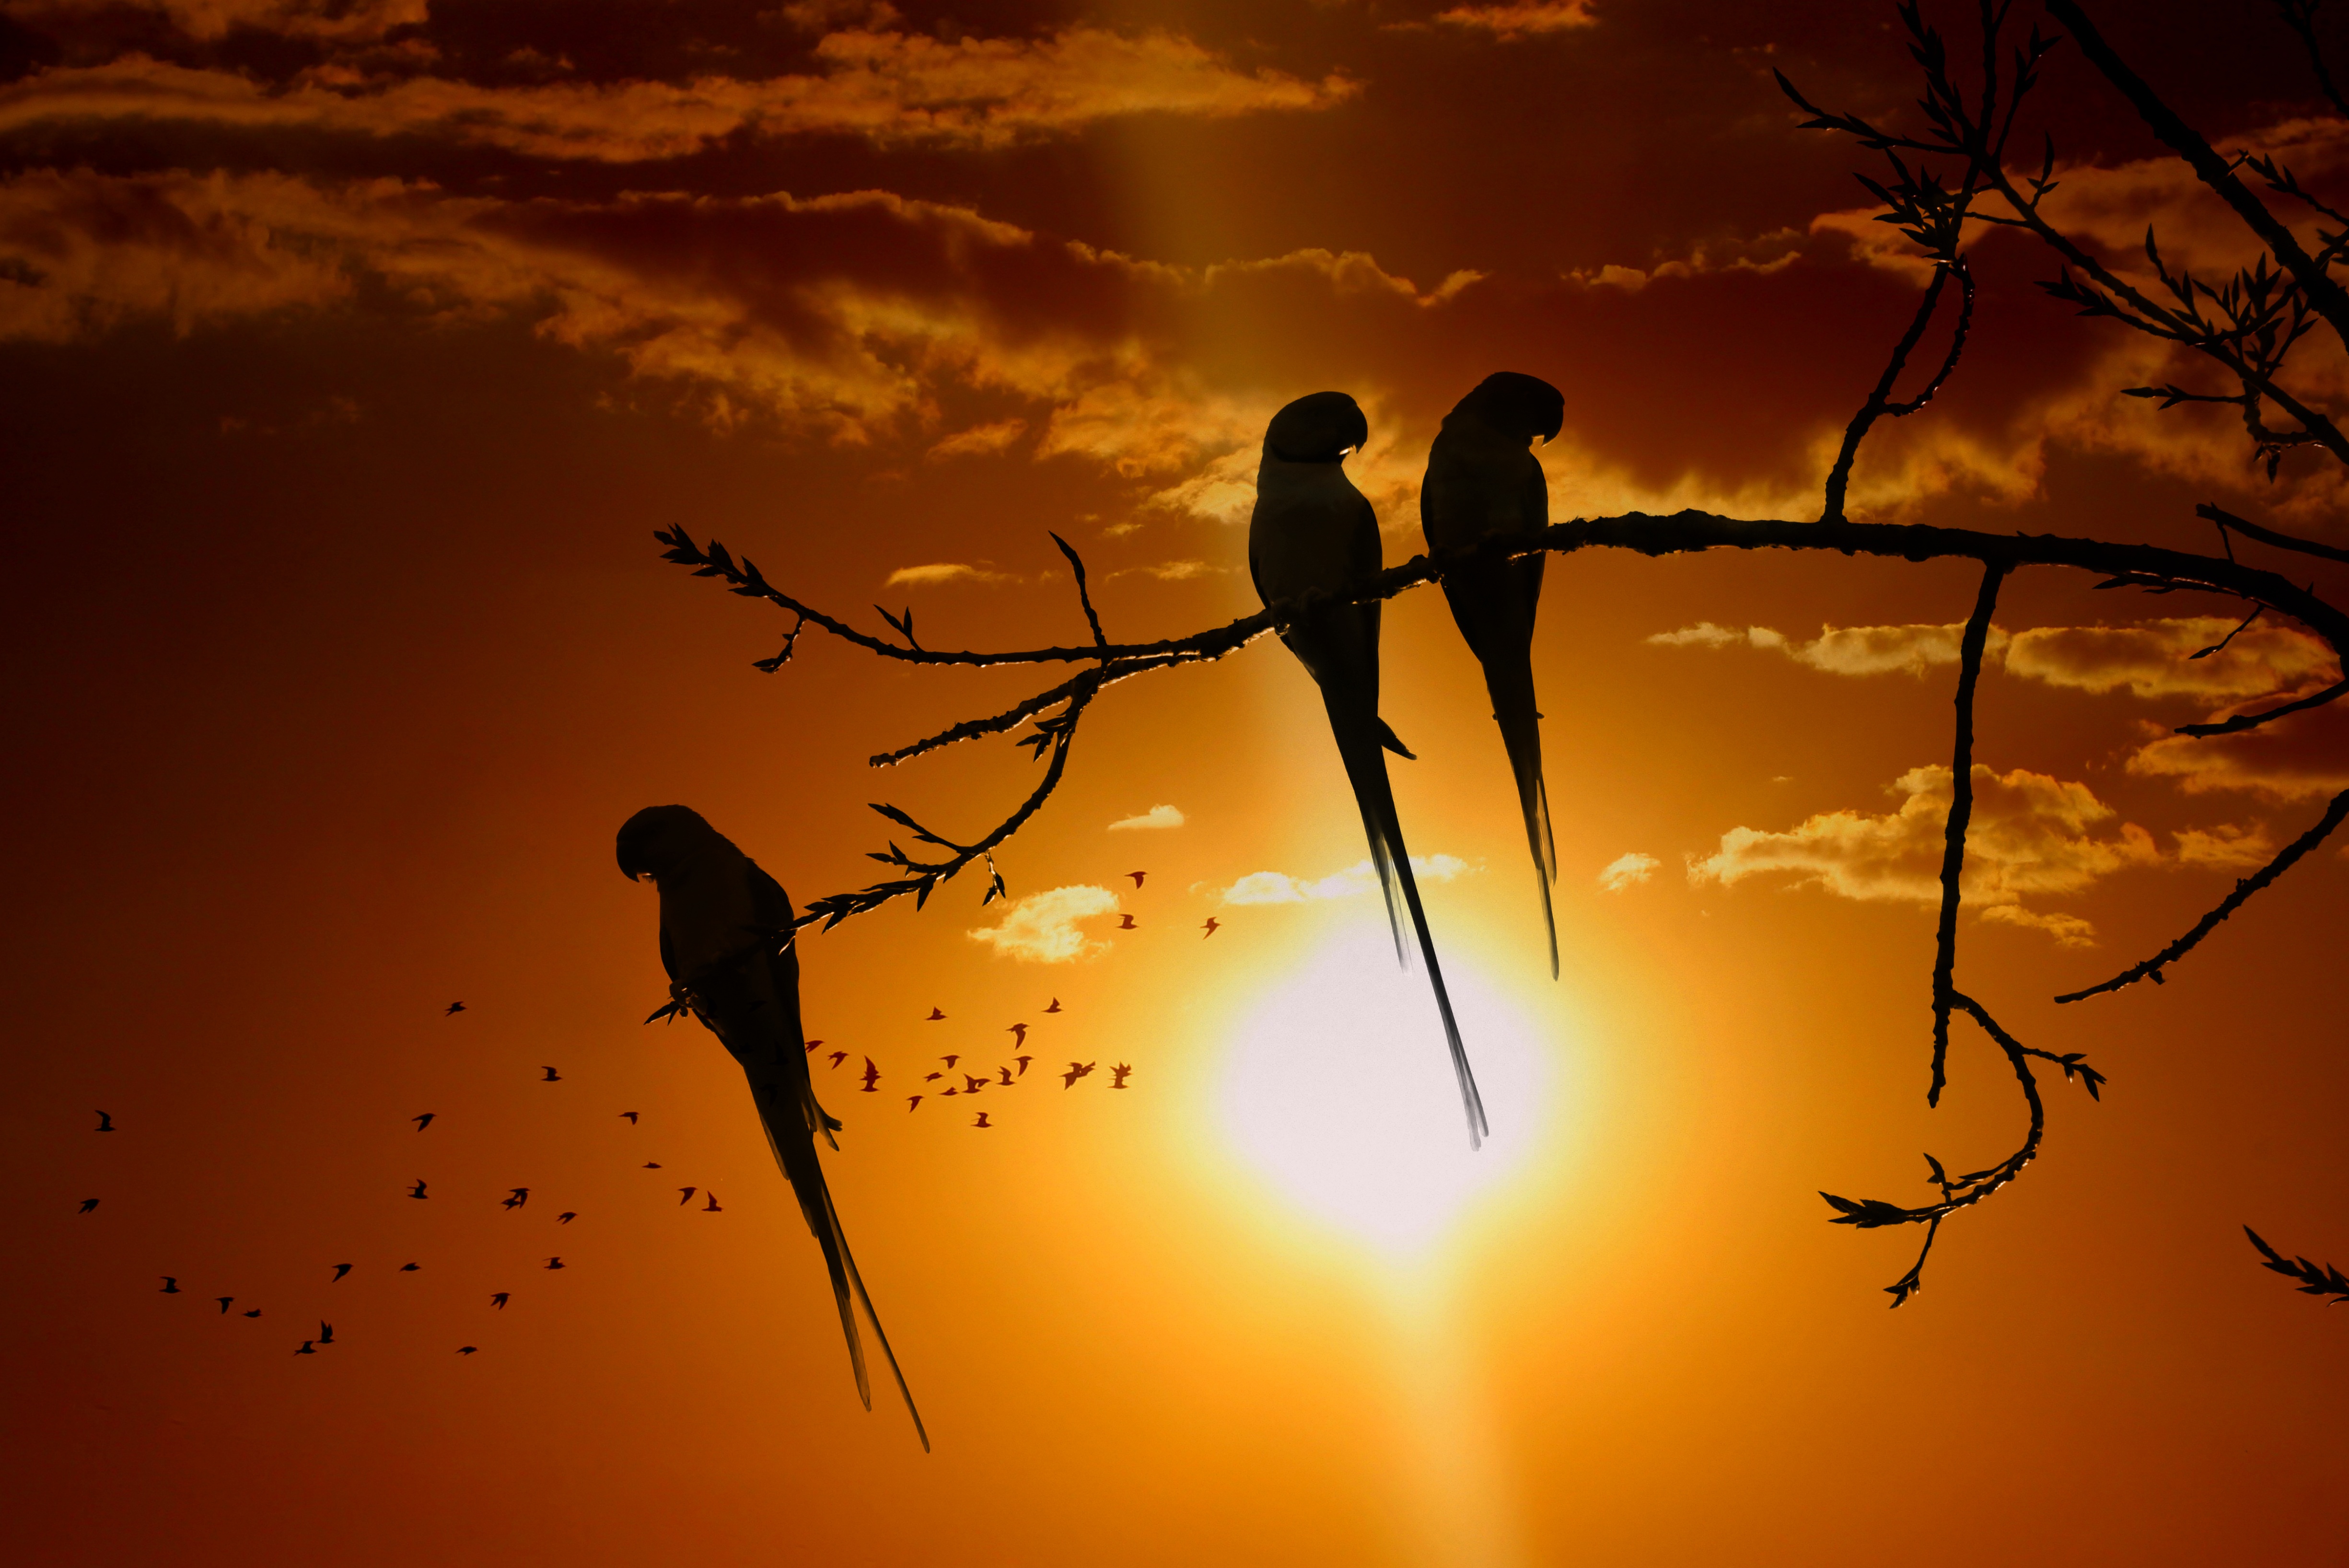 parrots, animals, birds, sunset, sun, twilight, branch, dusk